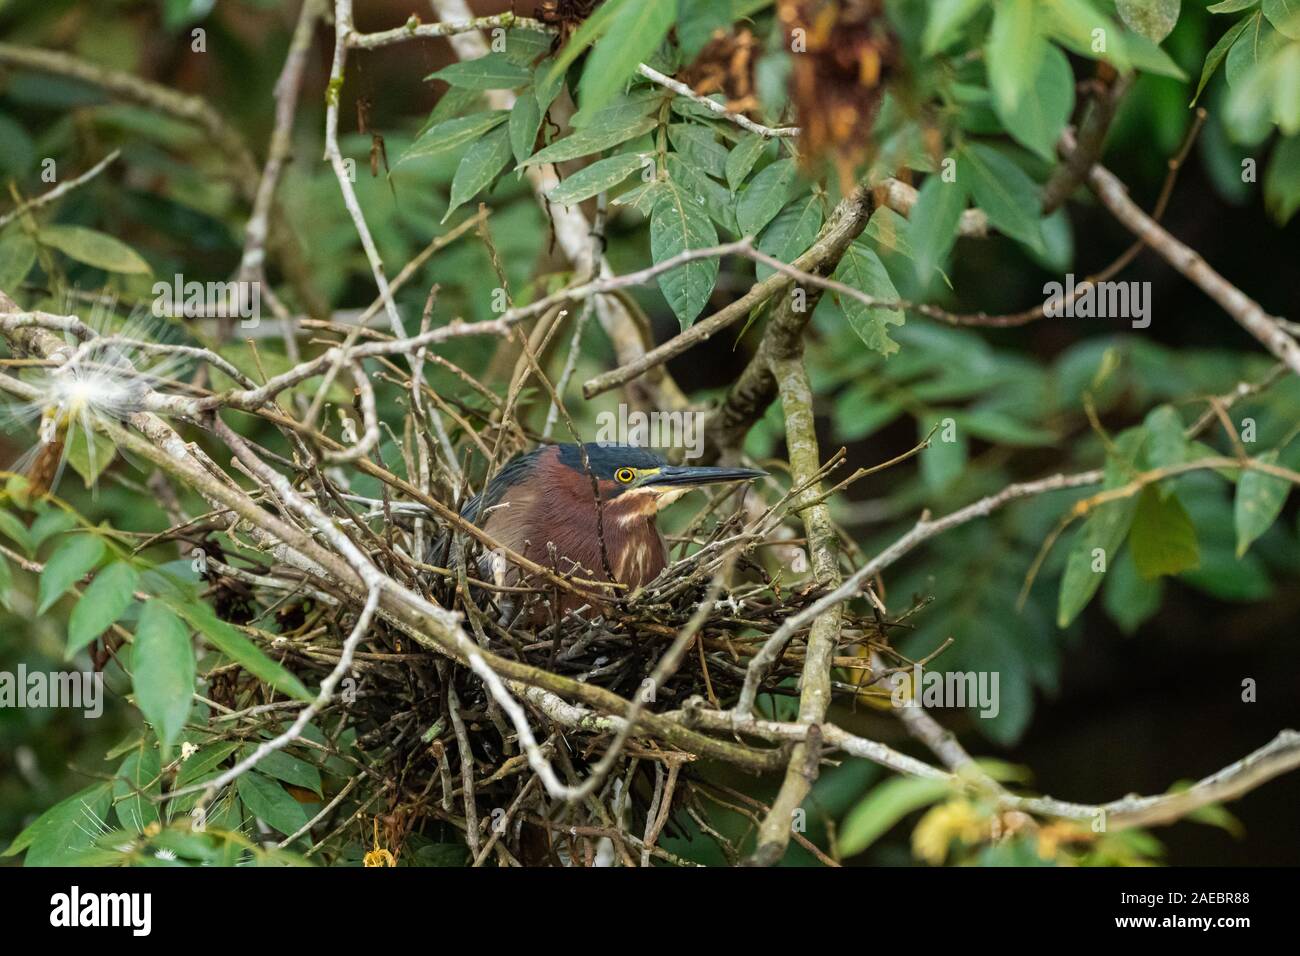 Le héron vert (Butorides virescens) dans son nid. Cet oiseau se retrouve dans les milieux humides du sud du Canada jusqu'au nord de l'Amérique du Sud. Comme tous les hérons, il utilise Banque D'Images